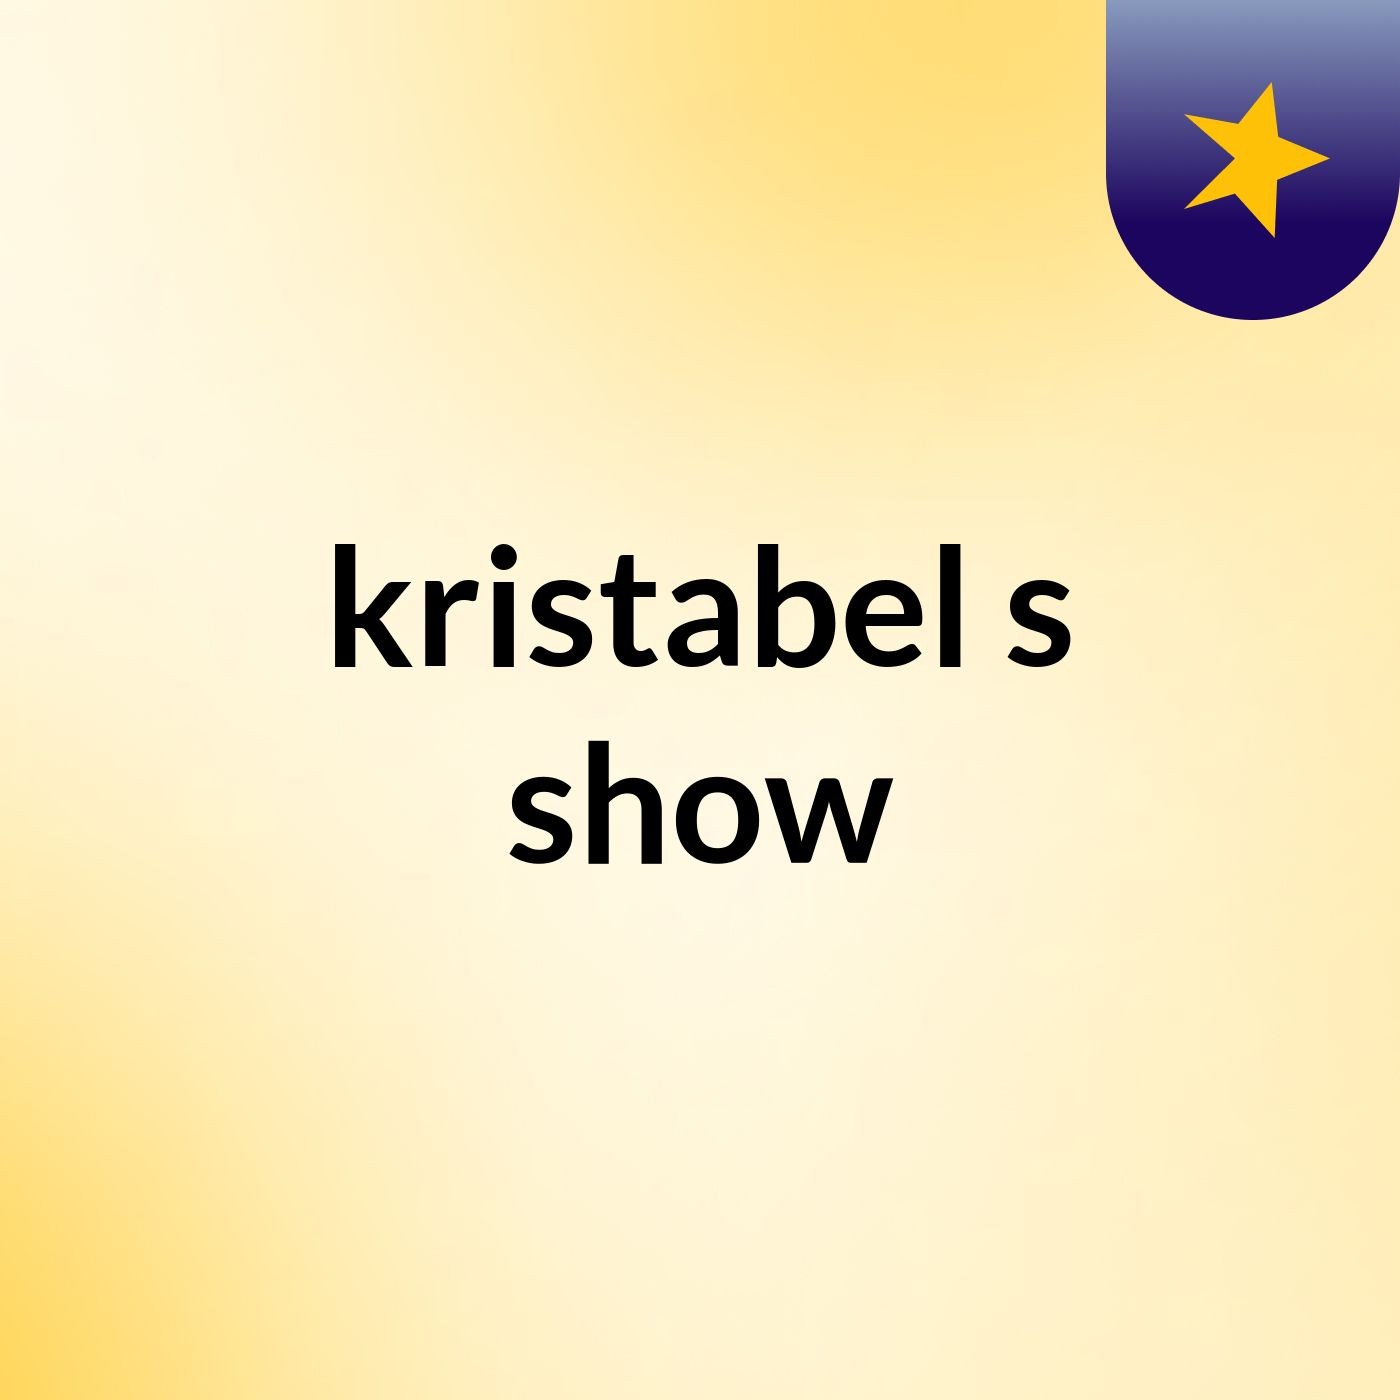 kristabel's show